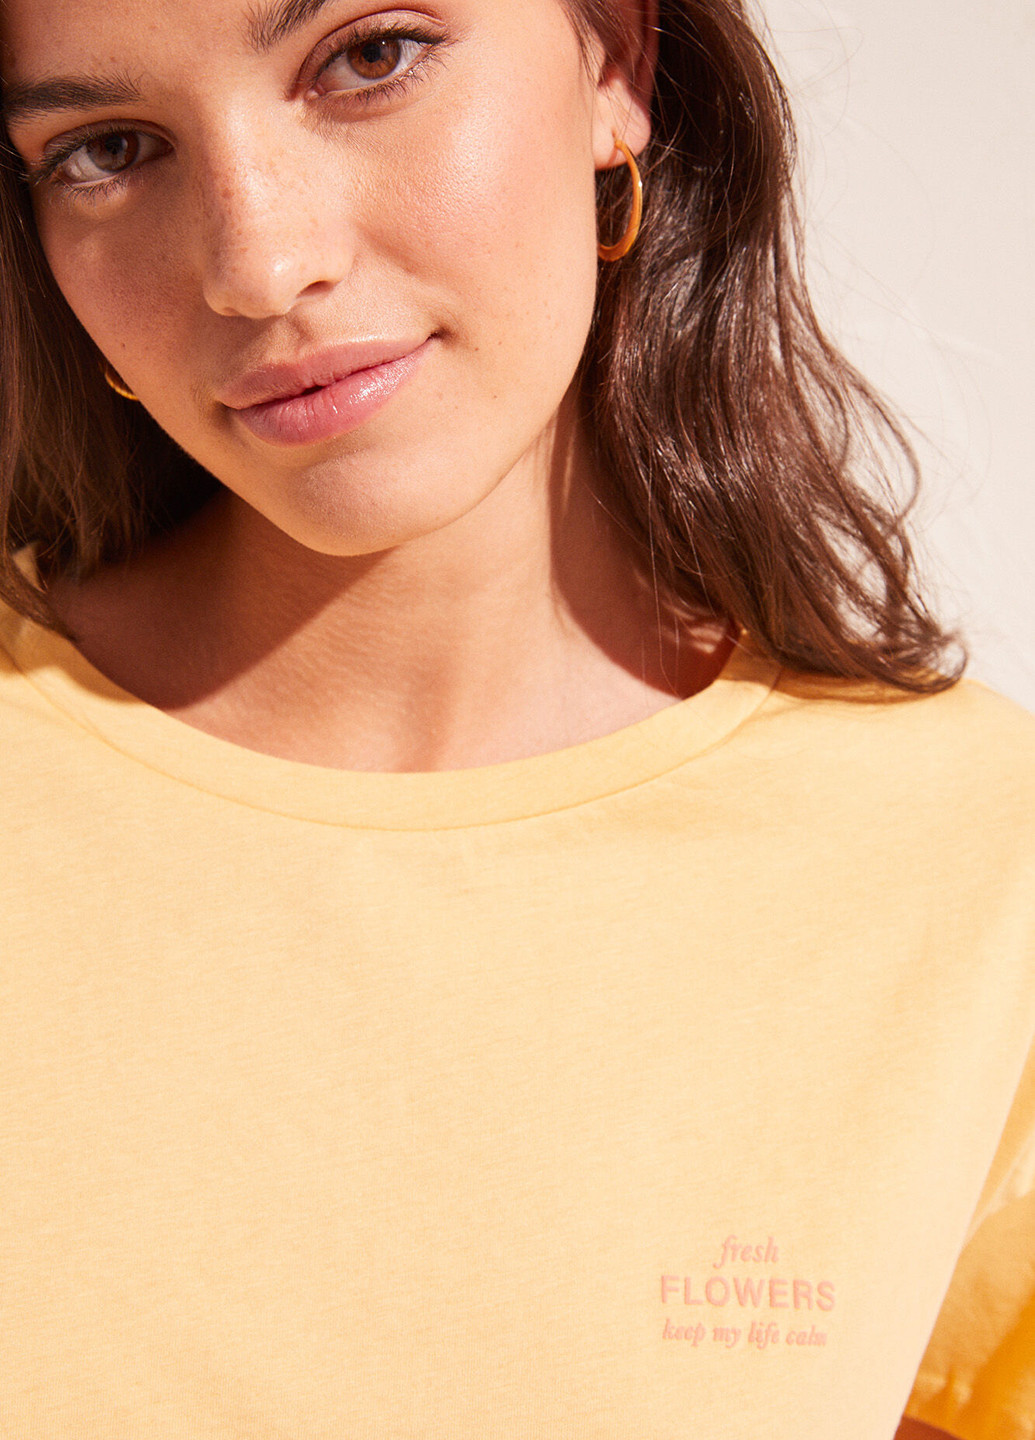 Желтая всесезон пижама (футболка, брюки) футболка + брюки Women'secret